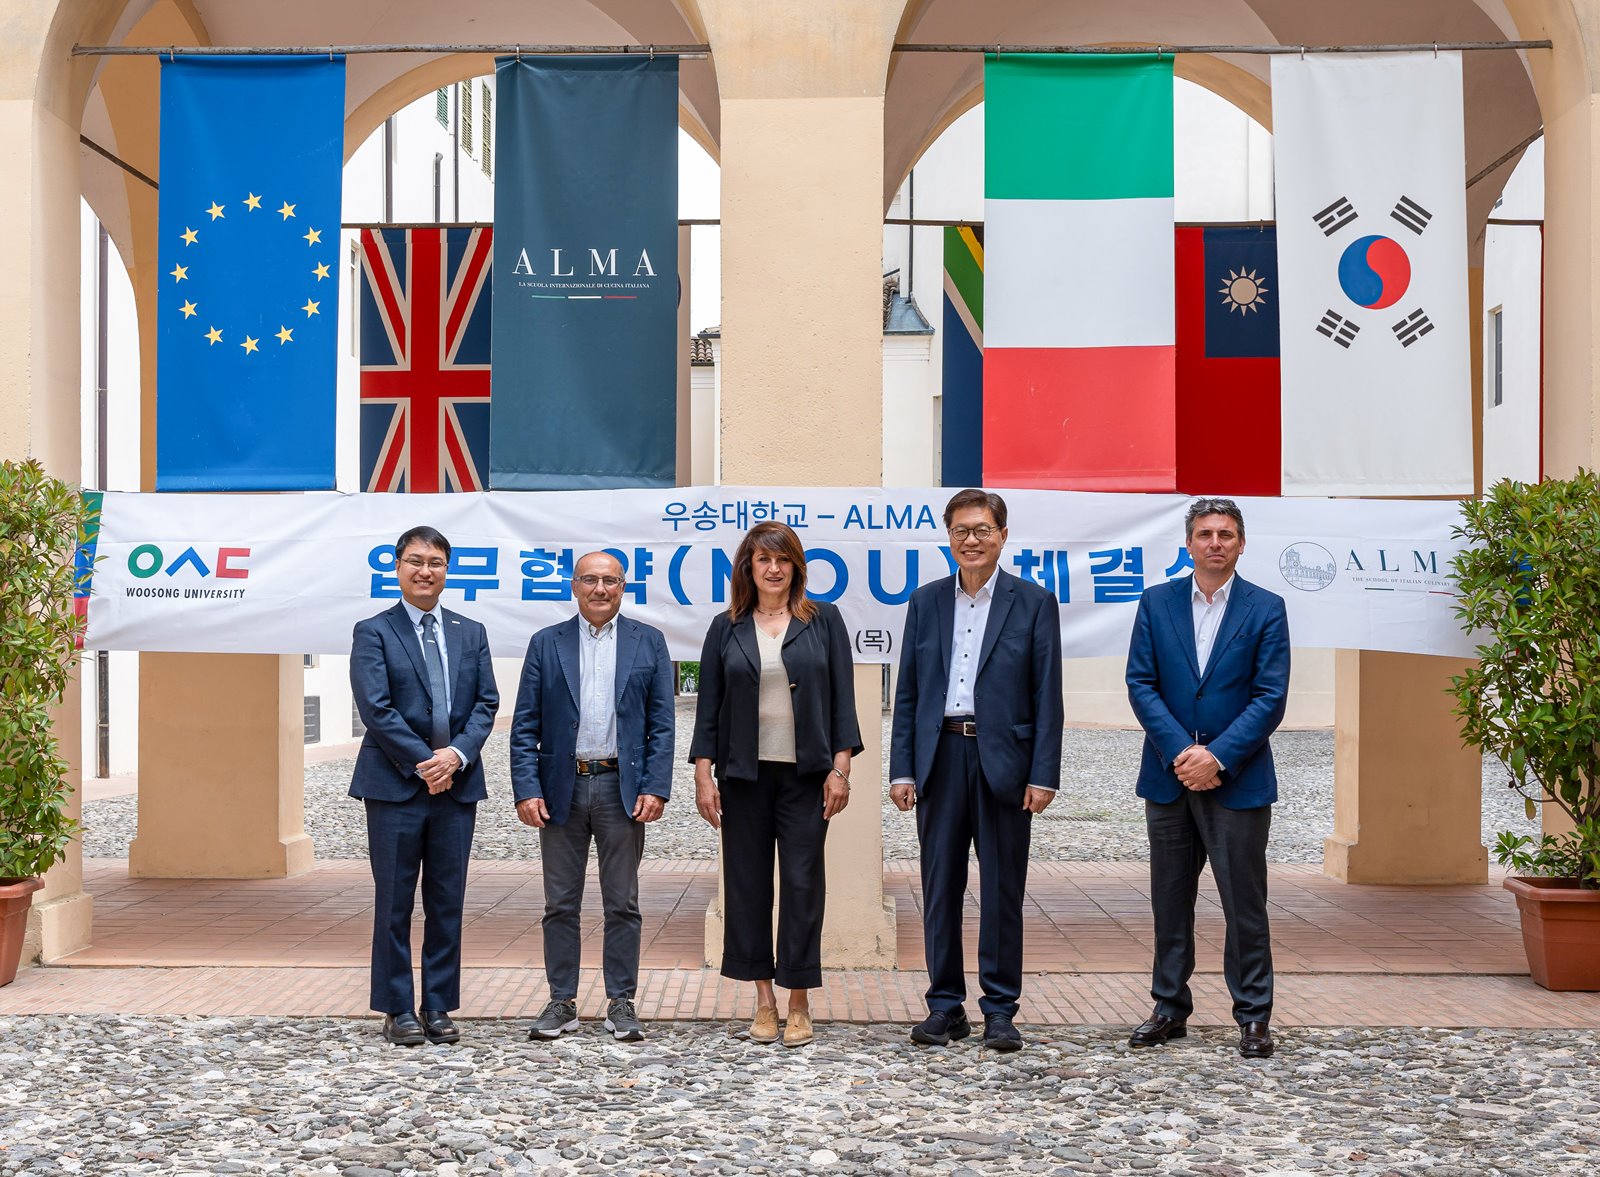 우송대, 이탈리아 유명 대학 및 요리학교와 전략적 파트너십 체결